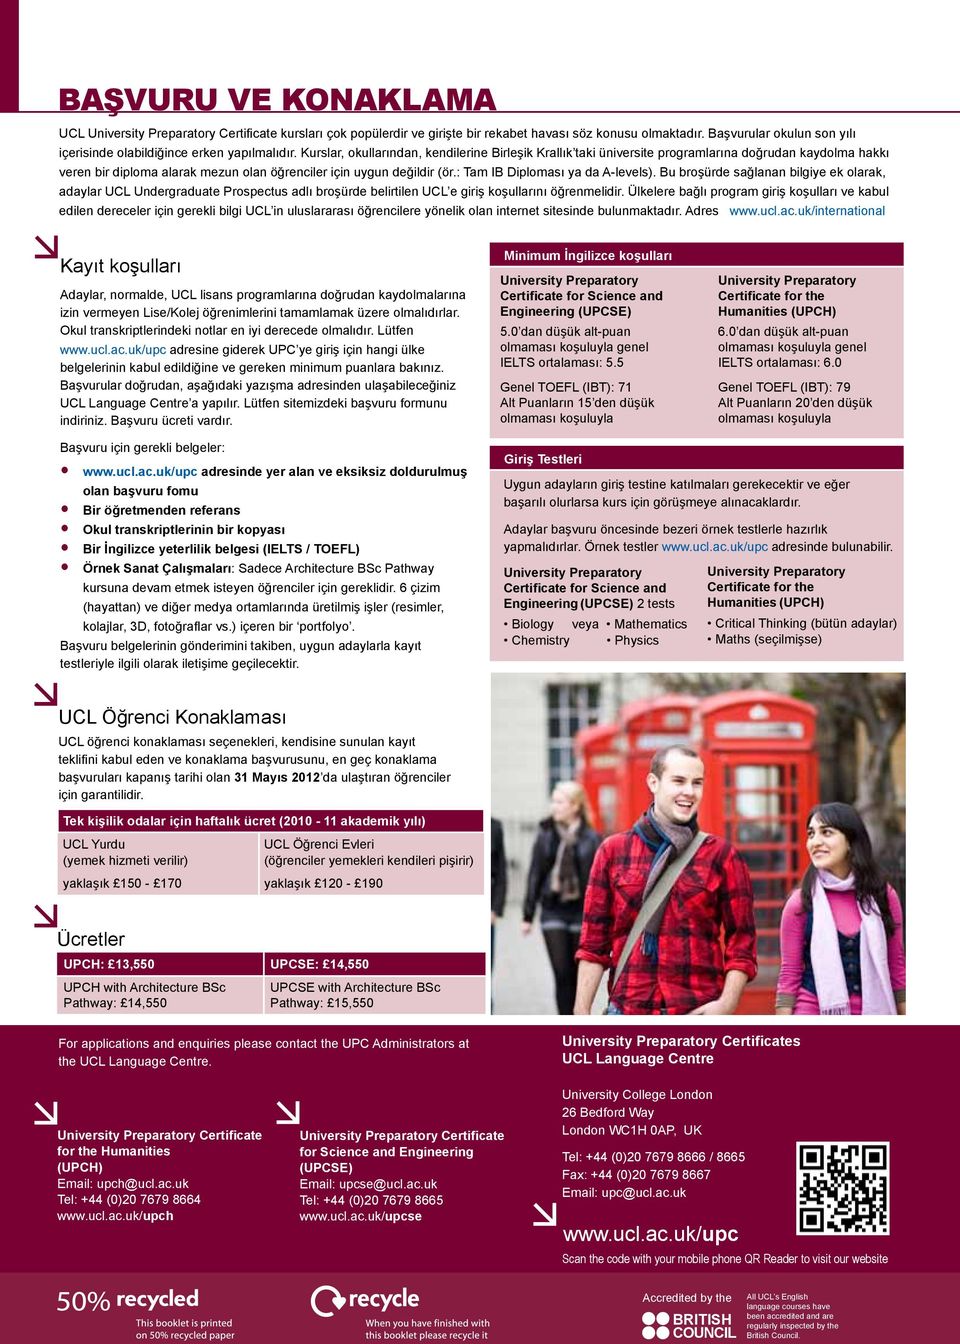 : Tam IB Diploması ya da A-levels). Bu broşürde sağlanan bilgiye ek olarak, adaylar UCL Undergraduate Prospectus adlı broşürde belirtilen UCL e giriş koşullarını öğrenmelidir.